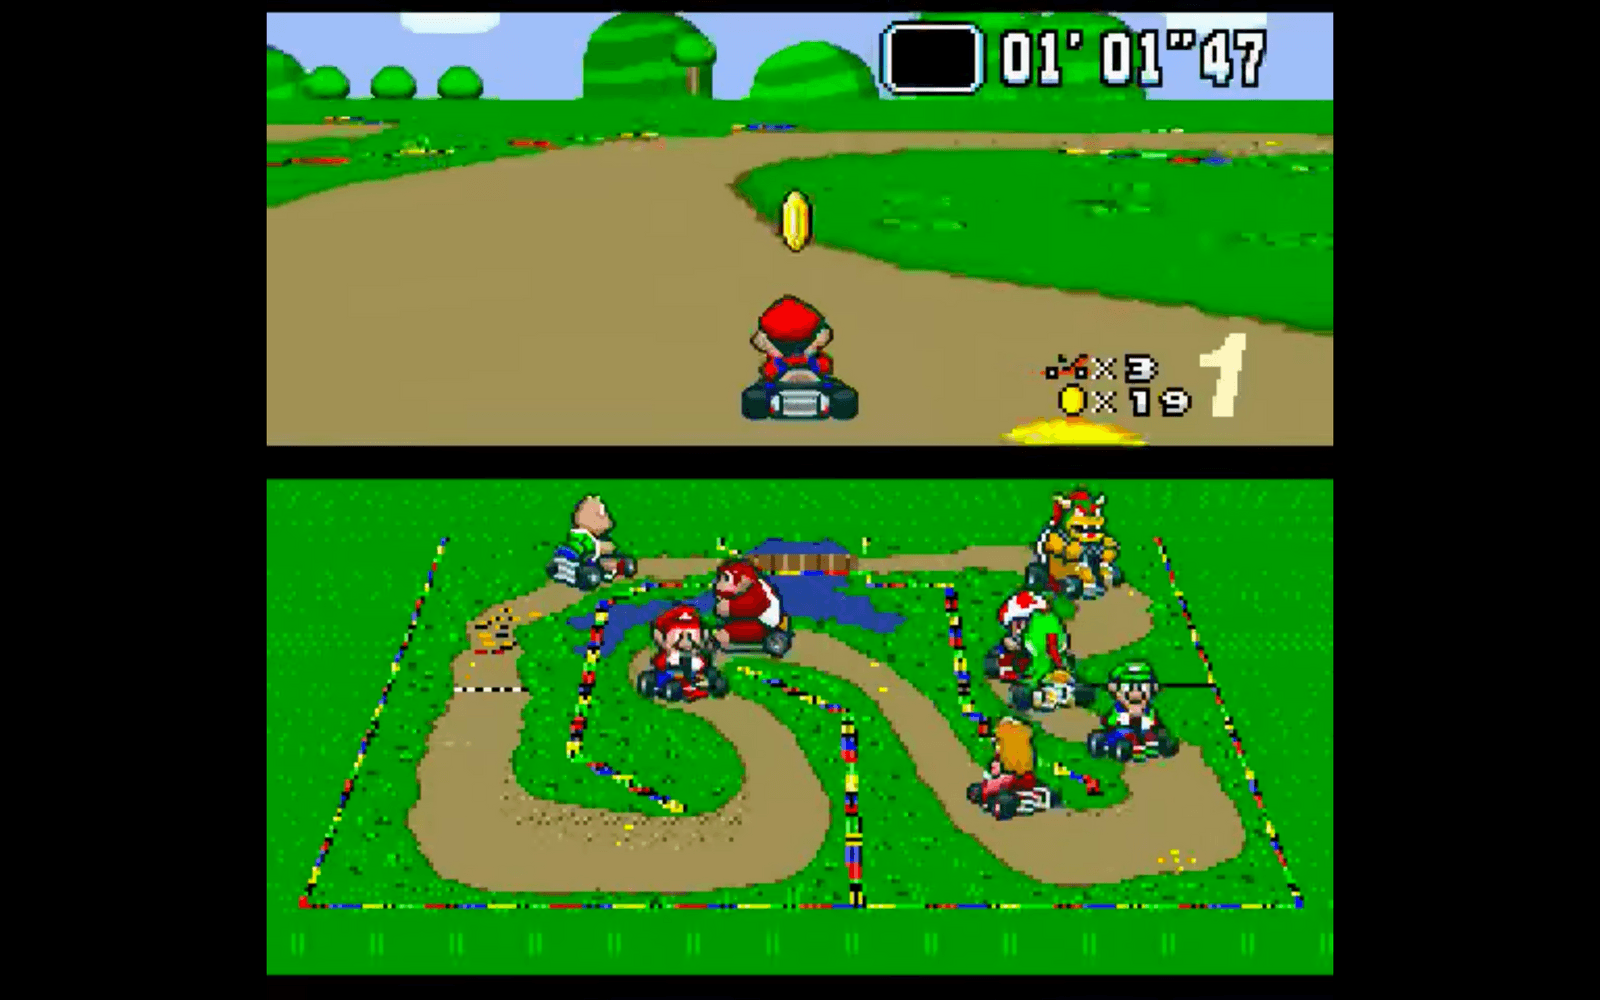 1992 släpptes det först spelet i Mario Kart-serien.